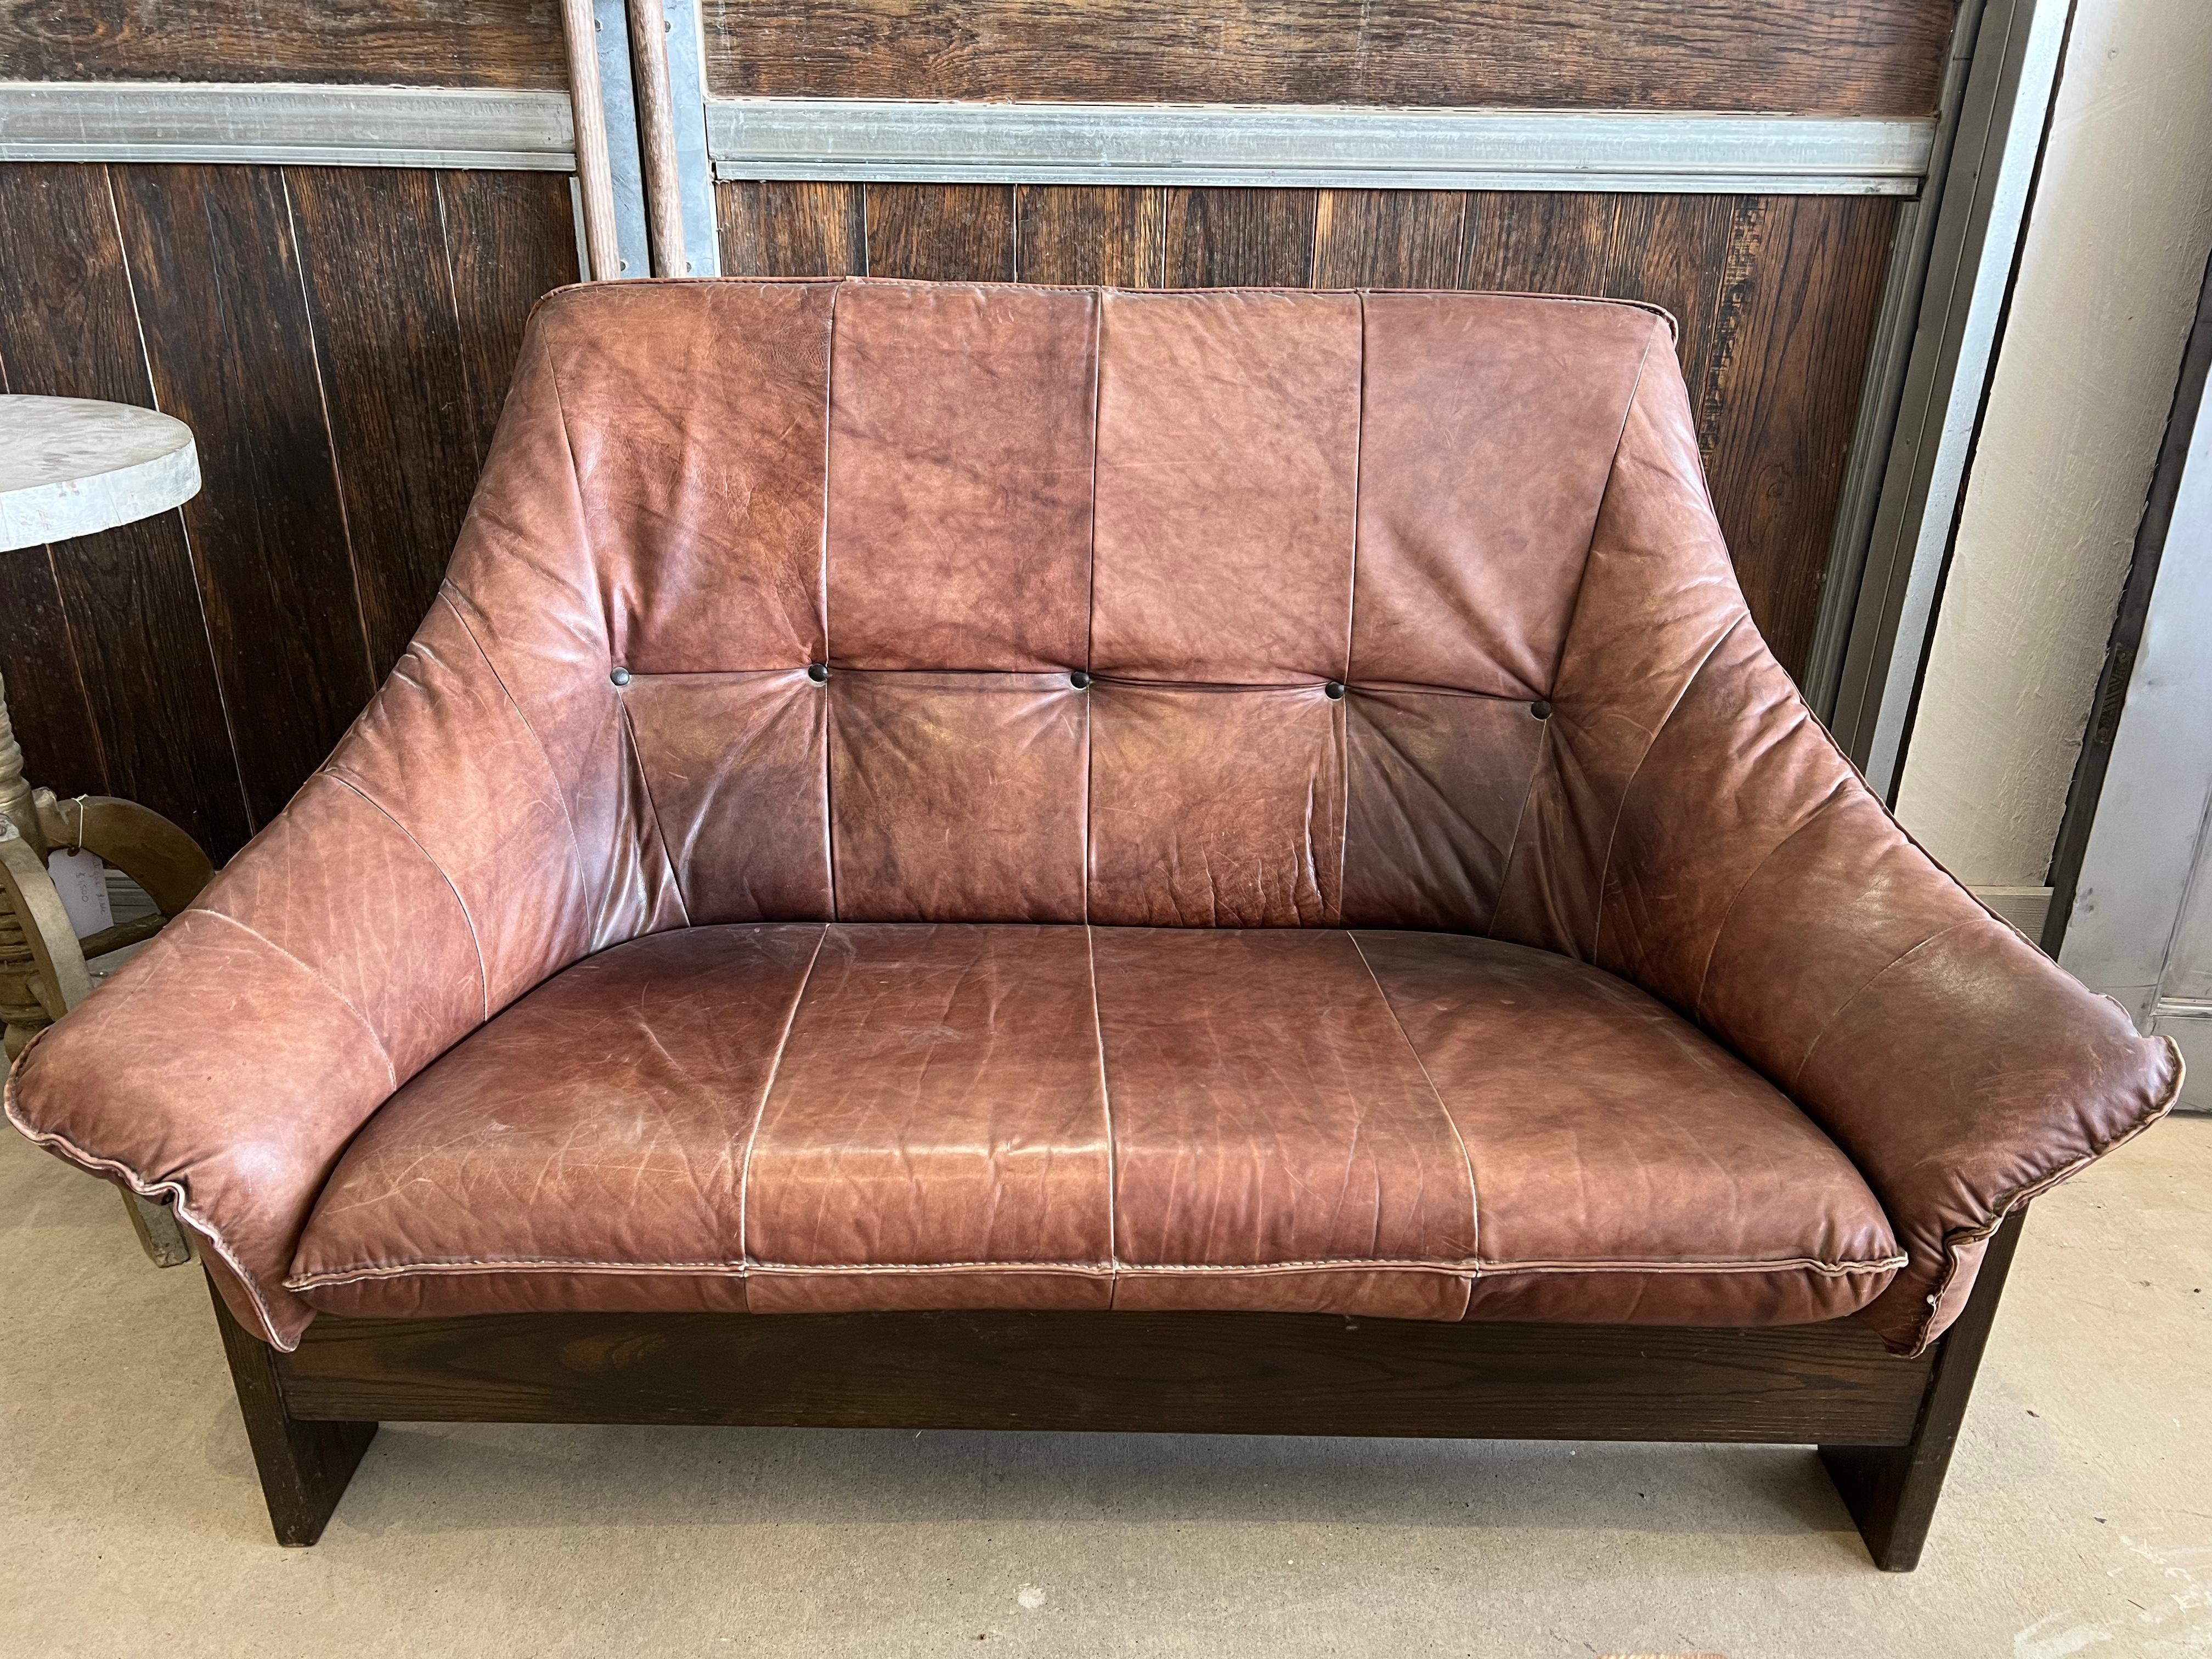 Canapé en cuir suédois des années 1970 avec base en bois. Un canapé et une chaise longue assortis sont disponibles.